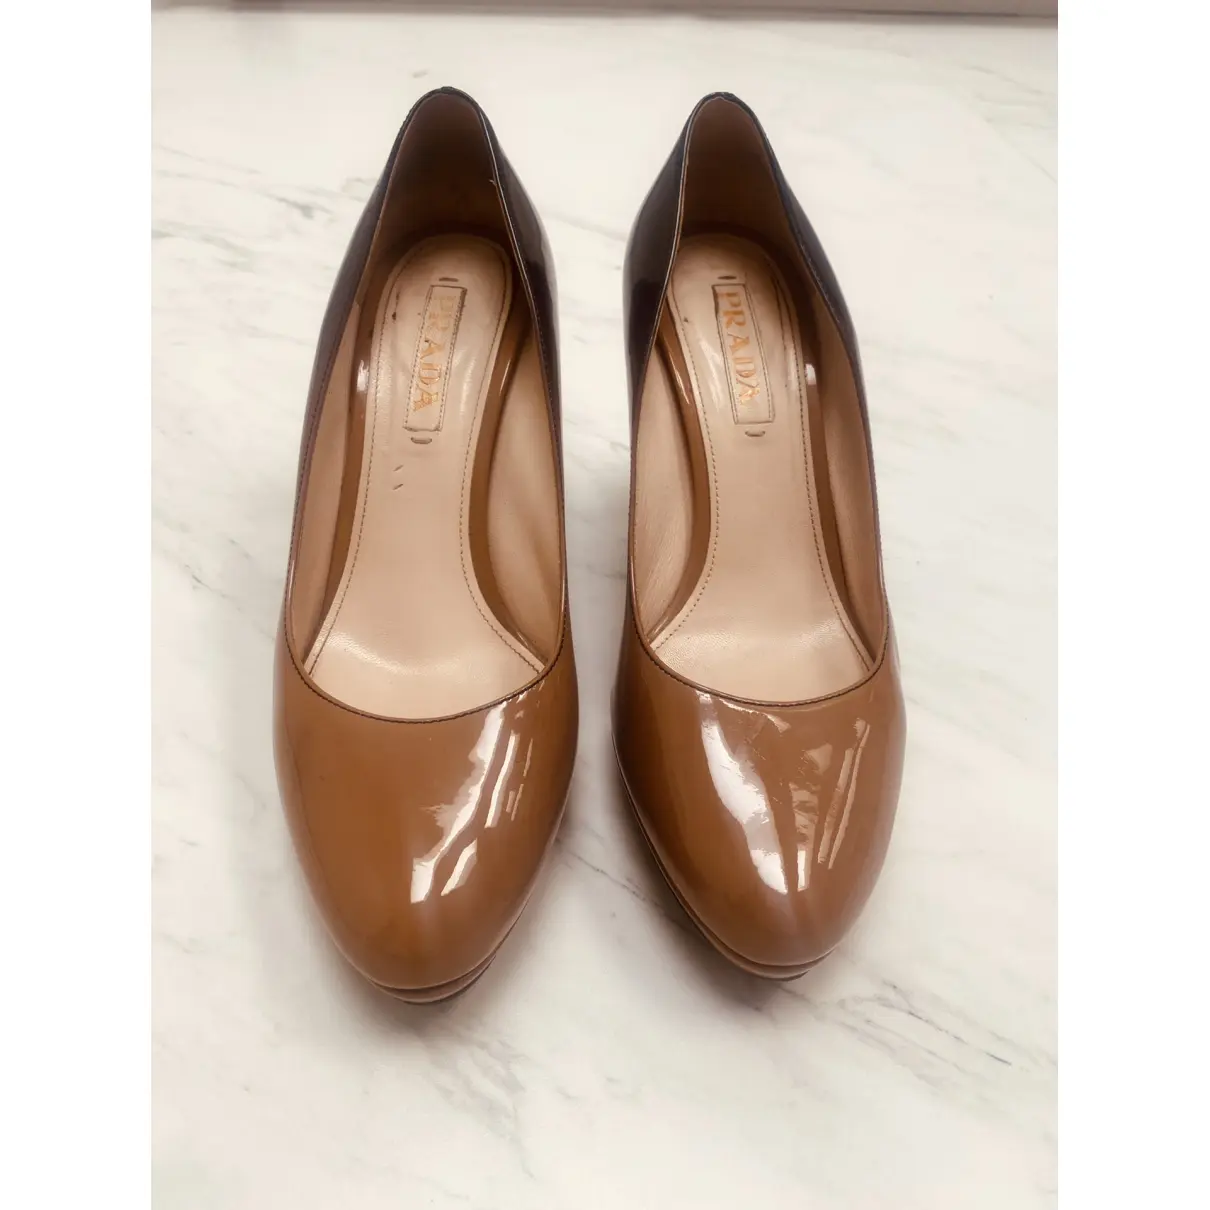 Buy Prada Patent leather heels online - Vintage